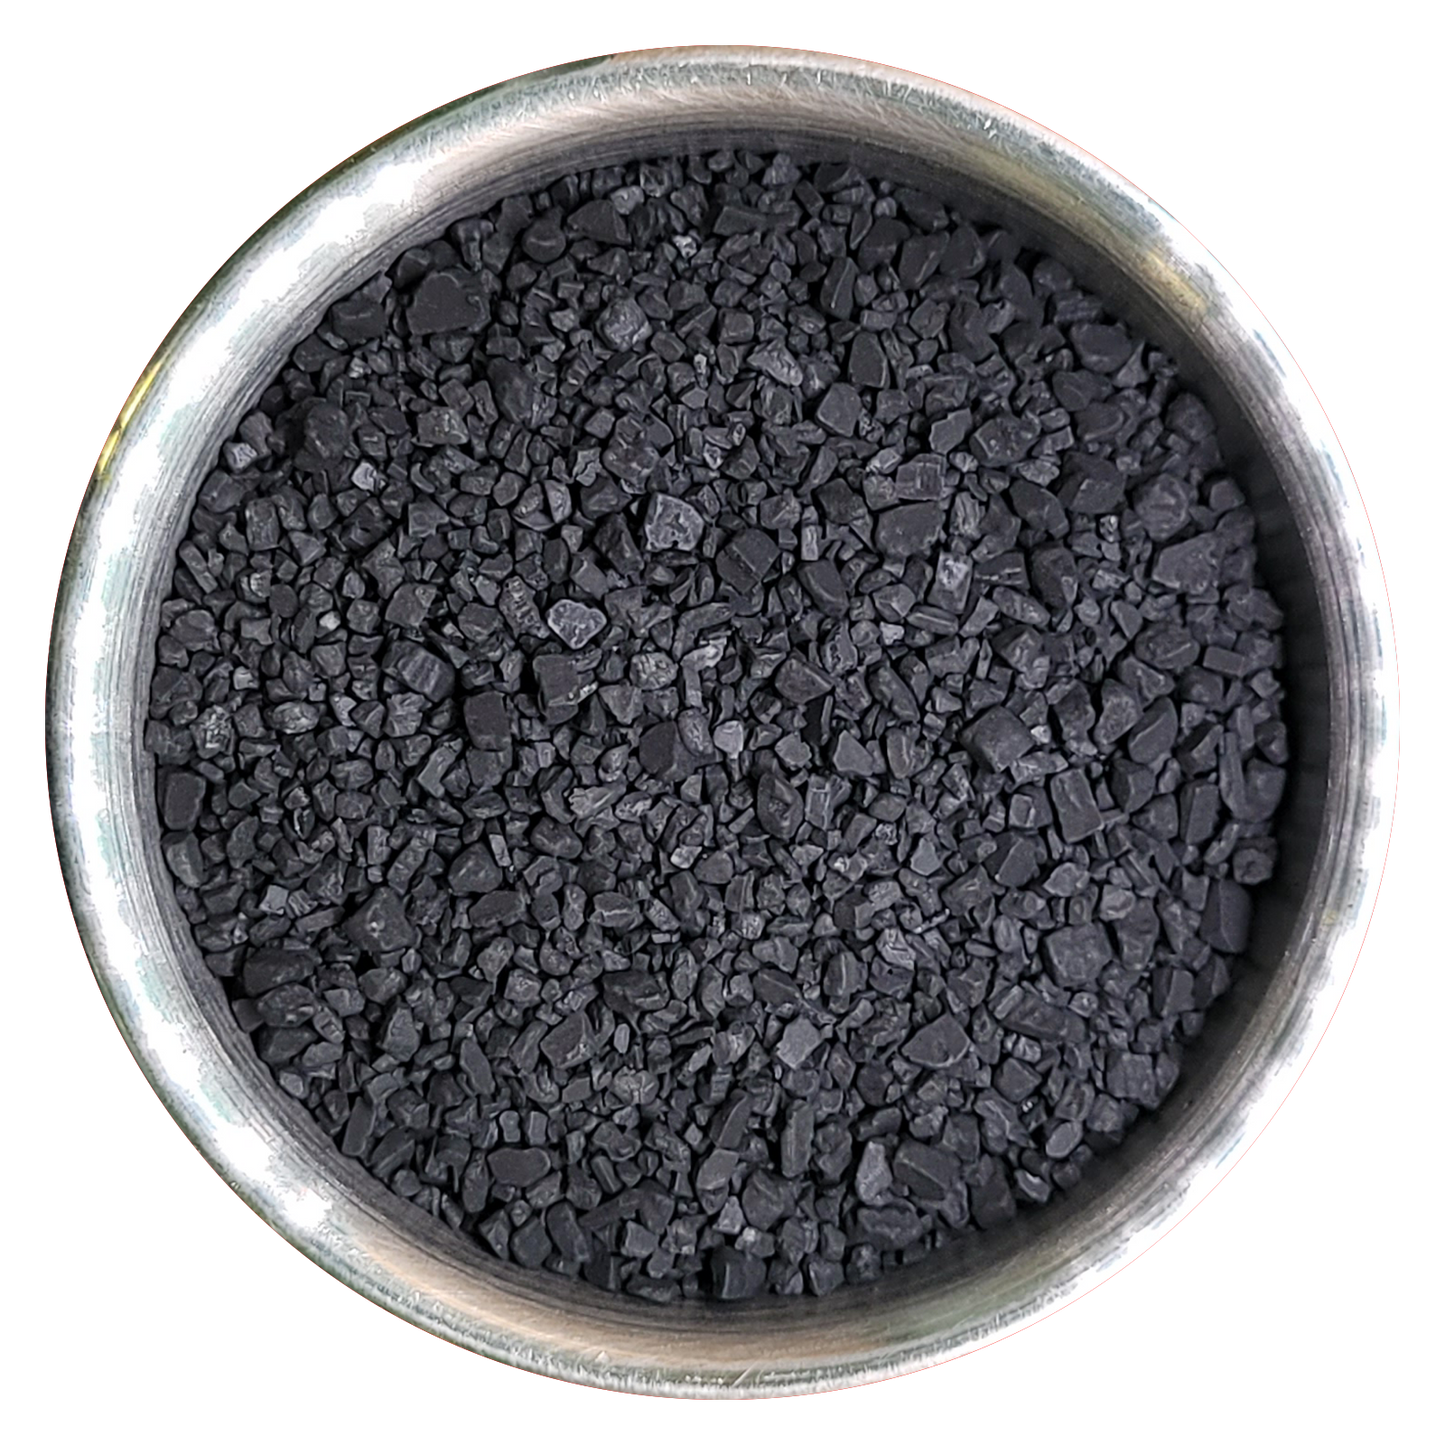 Black Lava Hawaiian Sea Salt